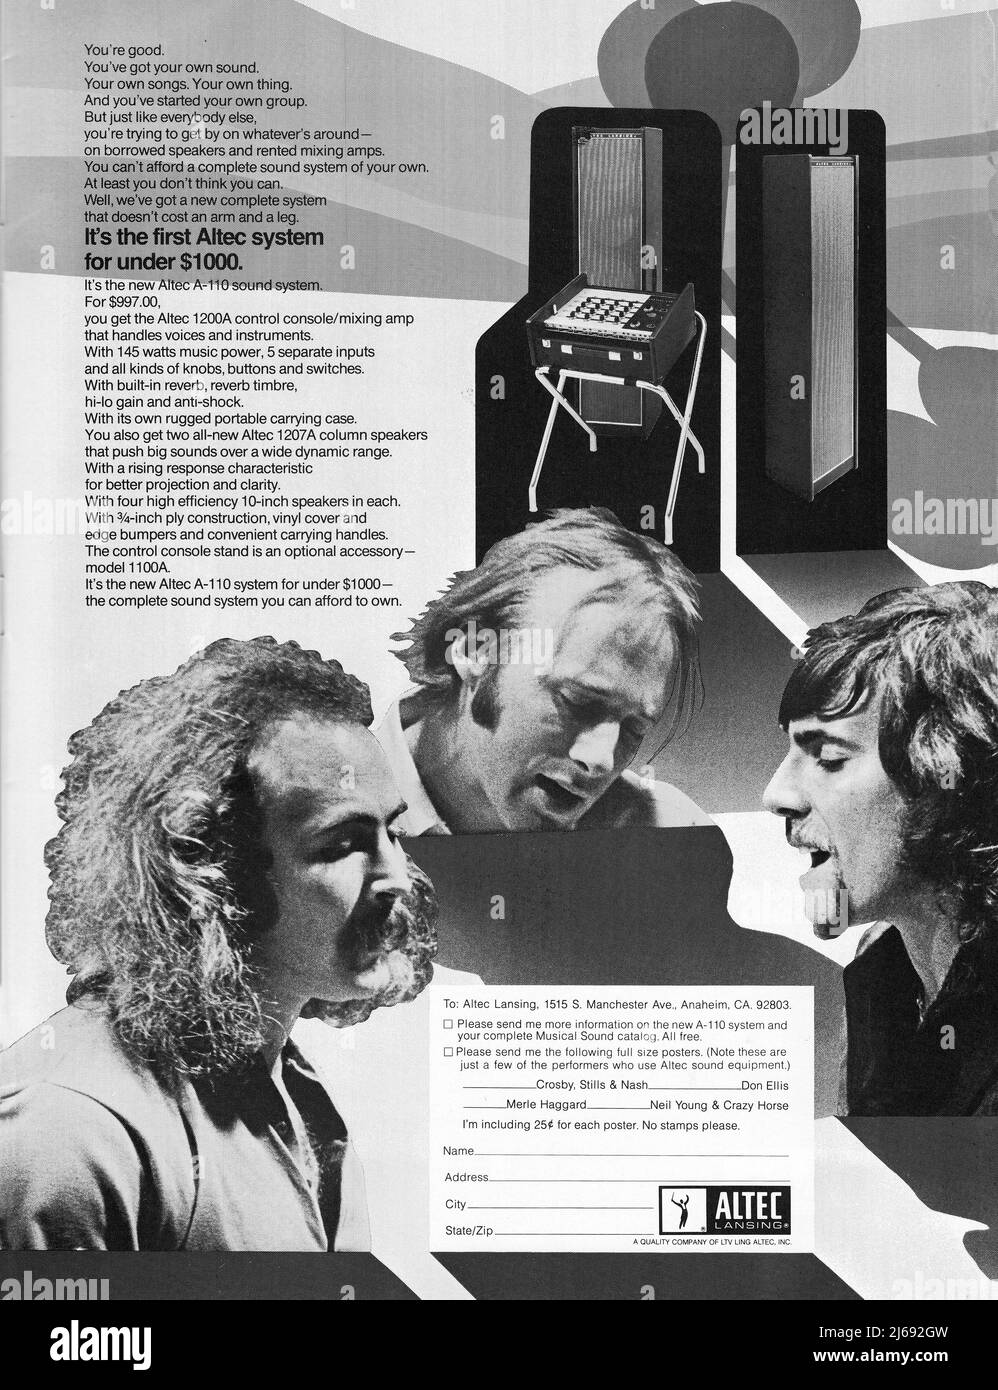 Eine Werbung für das Altec A-110 Soundsystem mit den Rocklegenden Crosby Stills & Nash. Aus einem amerikanischen Musikmagazin von 1970. Stockfoto